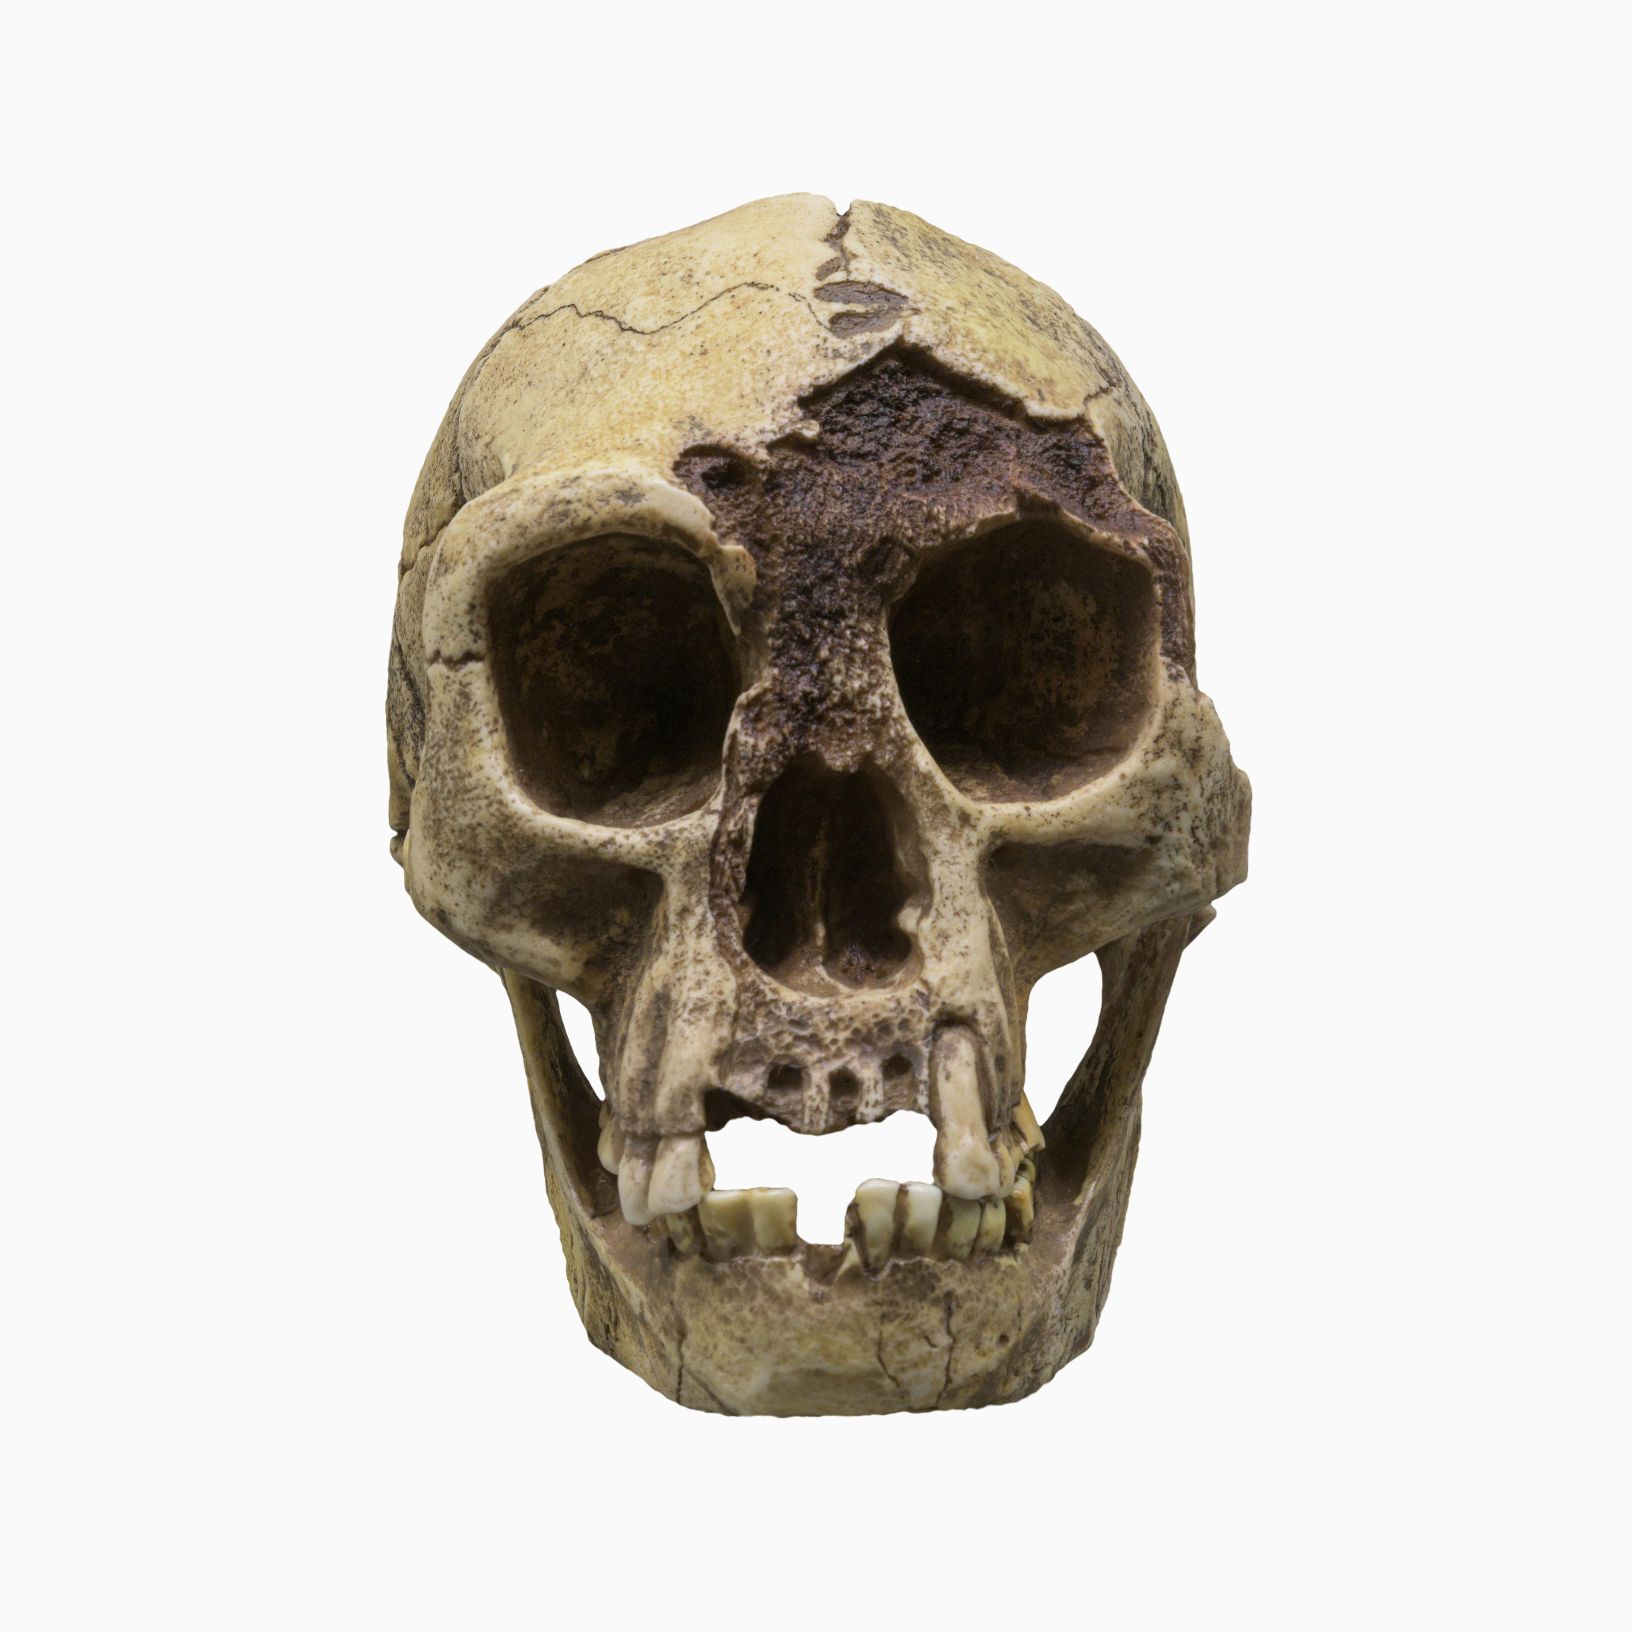 Lubanja H. floresiensis (Flores Man), pod nadimkom 'Hobit', vrsta je malog arhaičnog čovjeka koji je nastanjivao otok Flores u Indoneziji. © Autorstvo slike: Dmitriy Moroz | Licencirano s DreamsTime.com (fotografija za uredništvo/komercijalno korištenje, ID: 227004112)